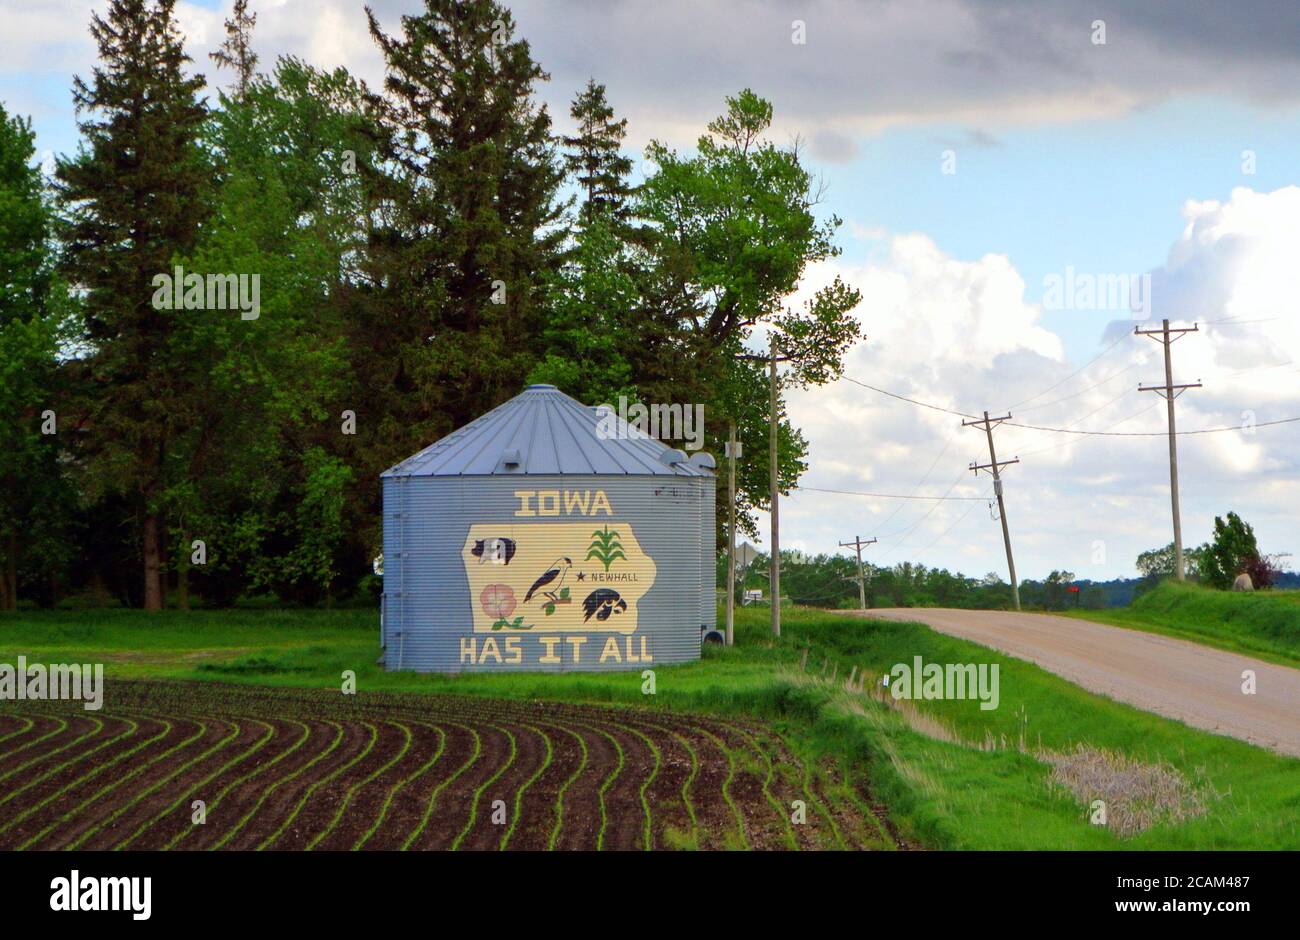 Alte Scheune entlang der historischen Route 30 auf iowa Farm stolz zeigen Schild und Gemälde sagen, dass iowa hat alles Stockfoto